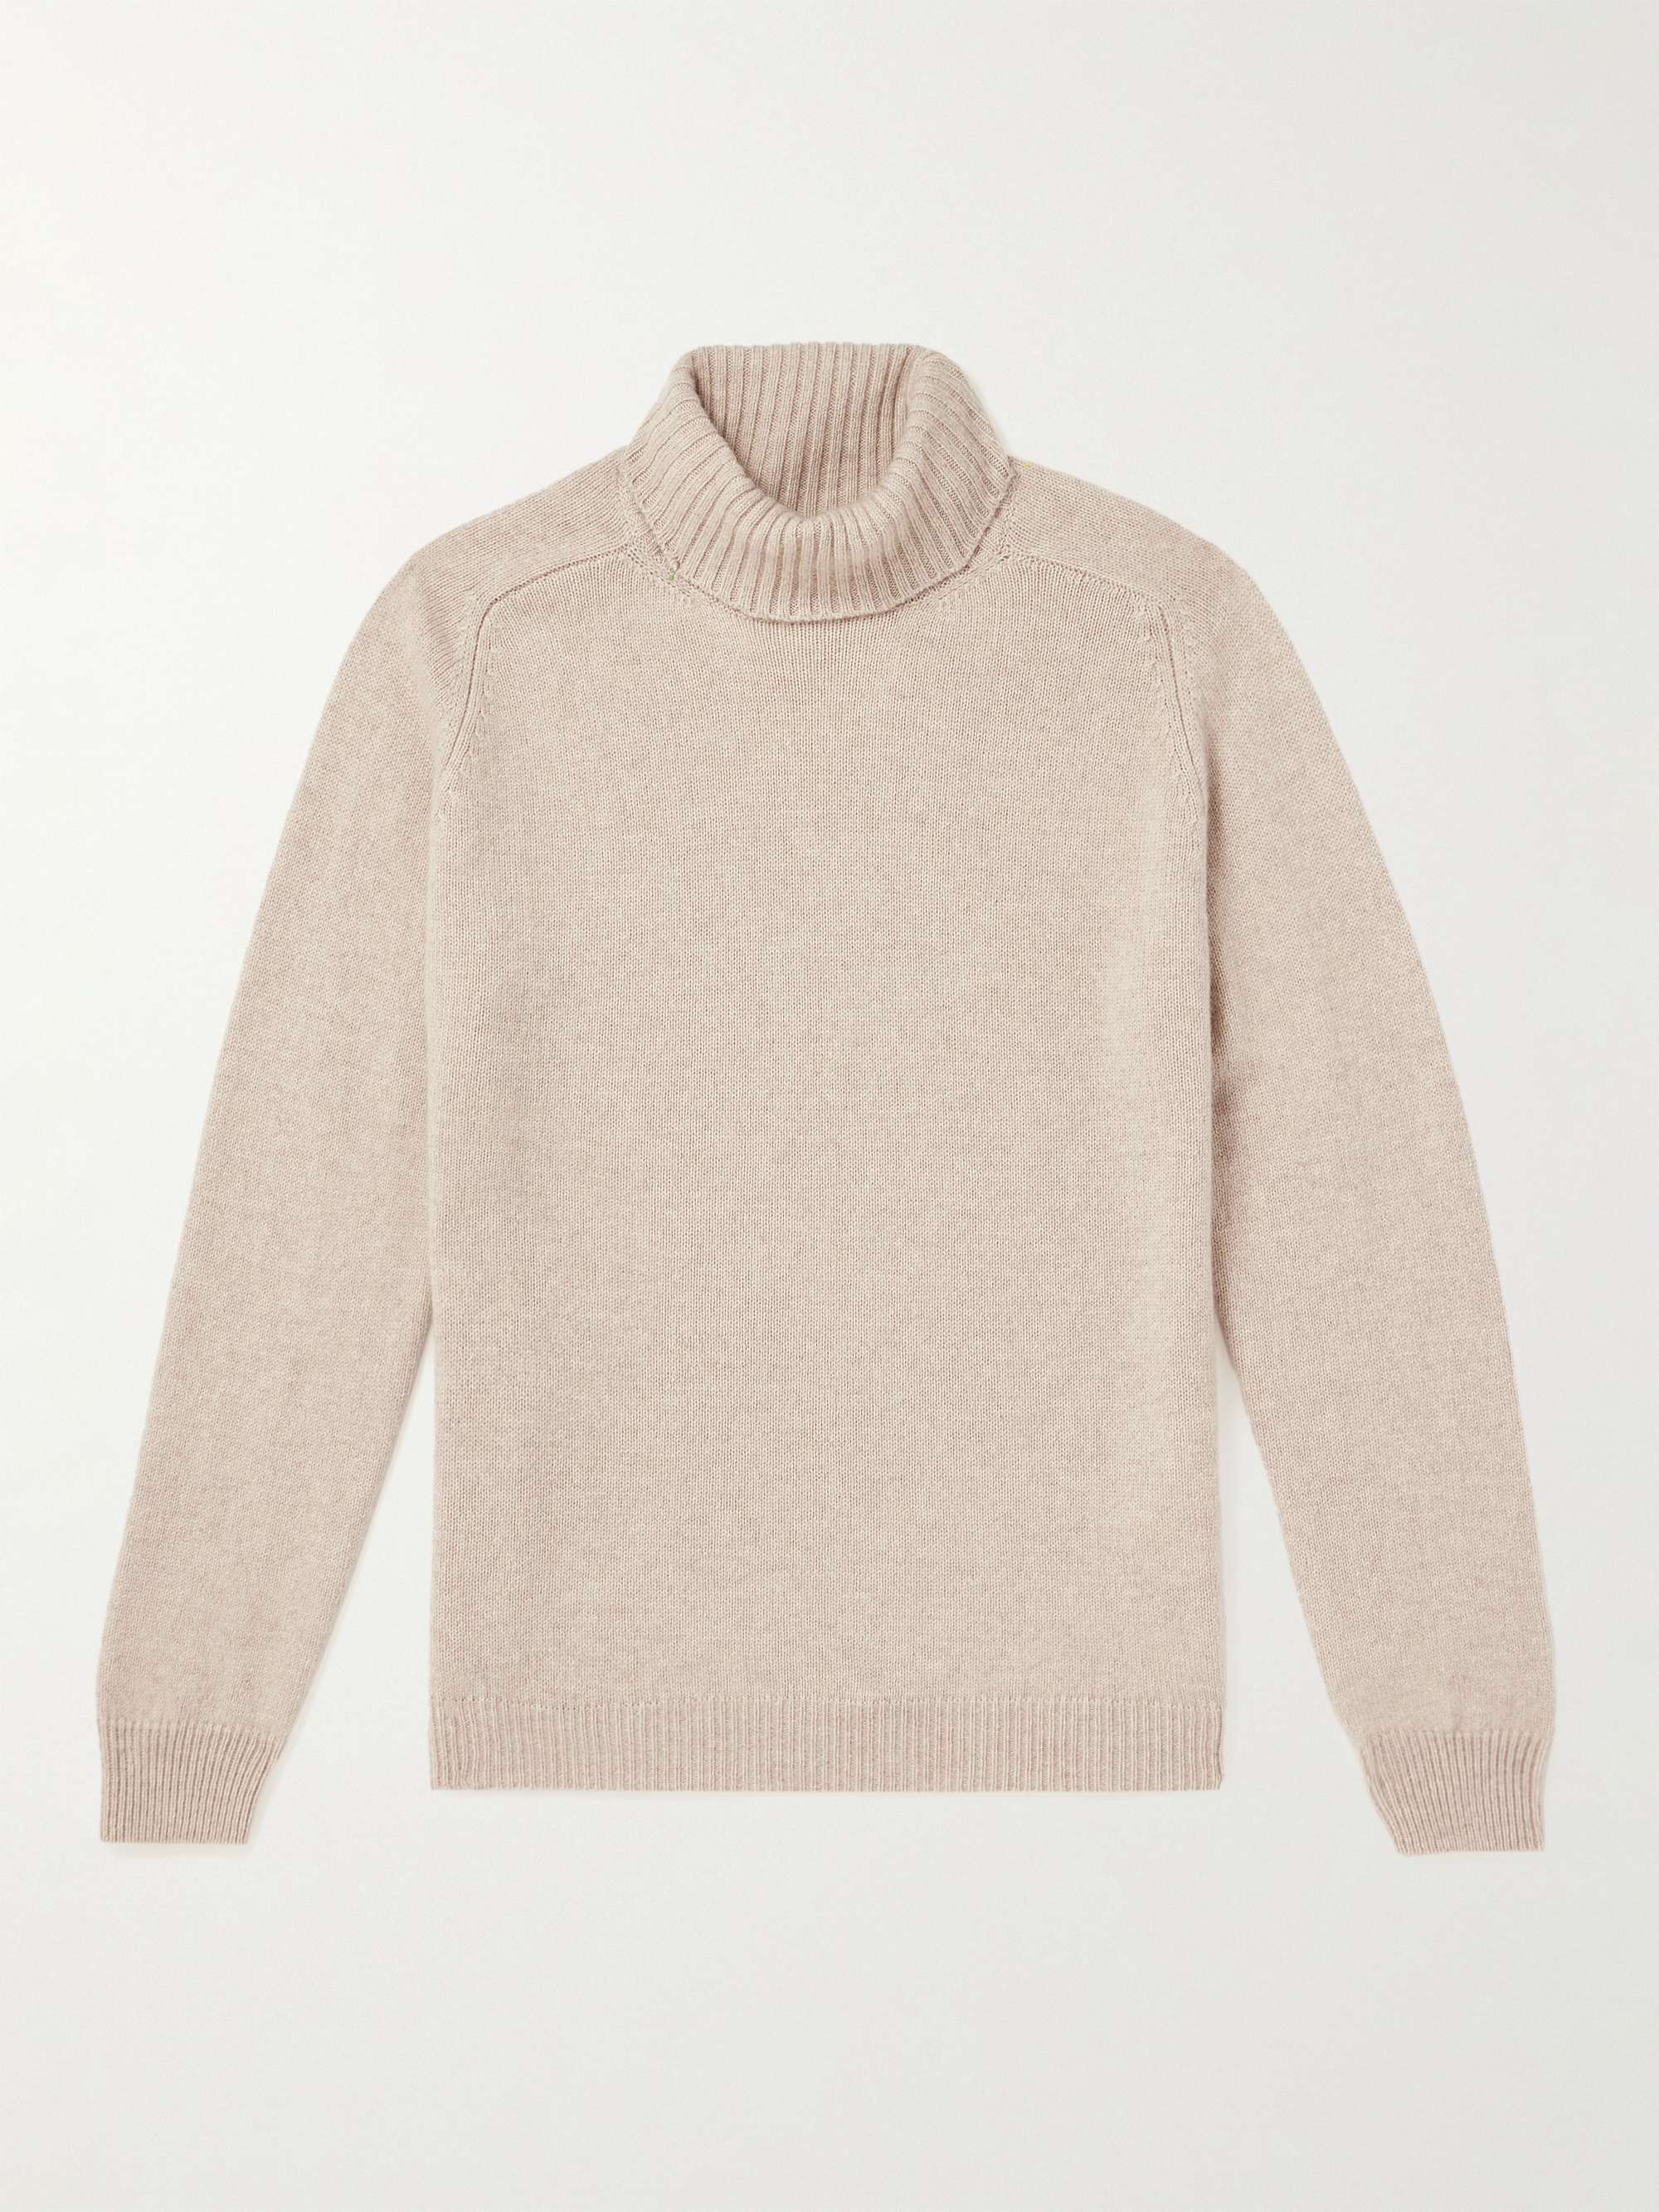 BOGLIOLI Cashmere Rollneck Sweater for Men | MR PORTER